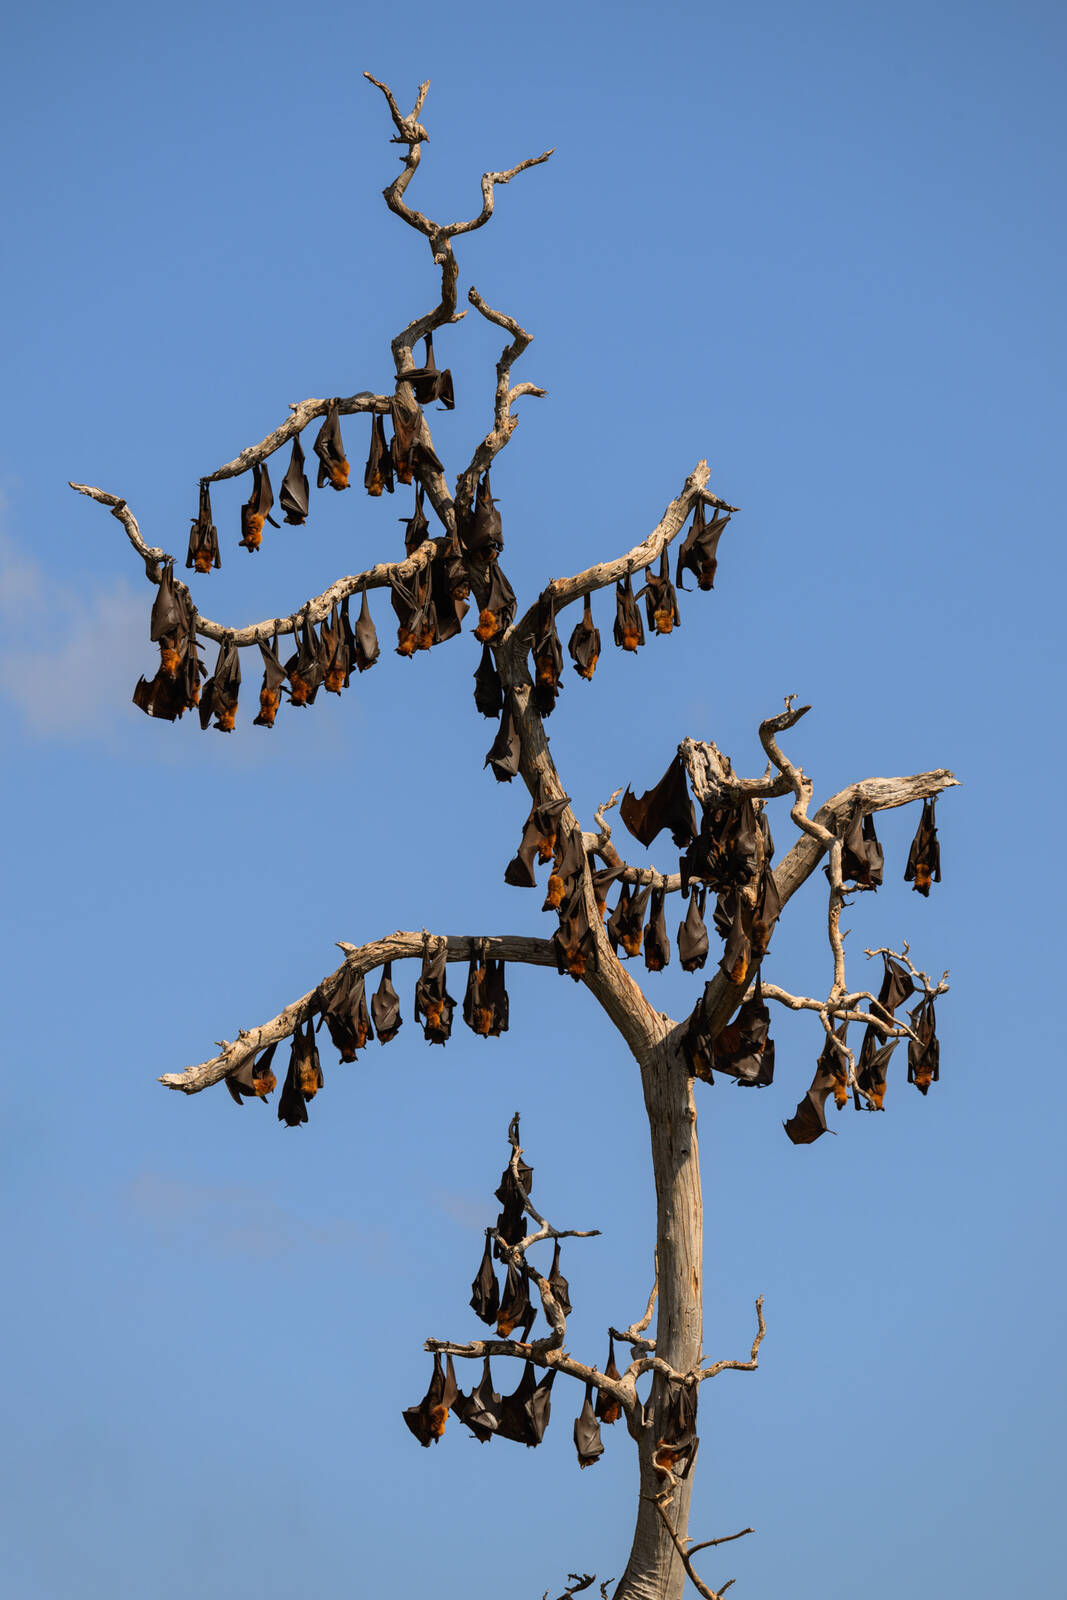 Image of 17 Islands - Flying Fox Colony by Luka Esenko